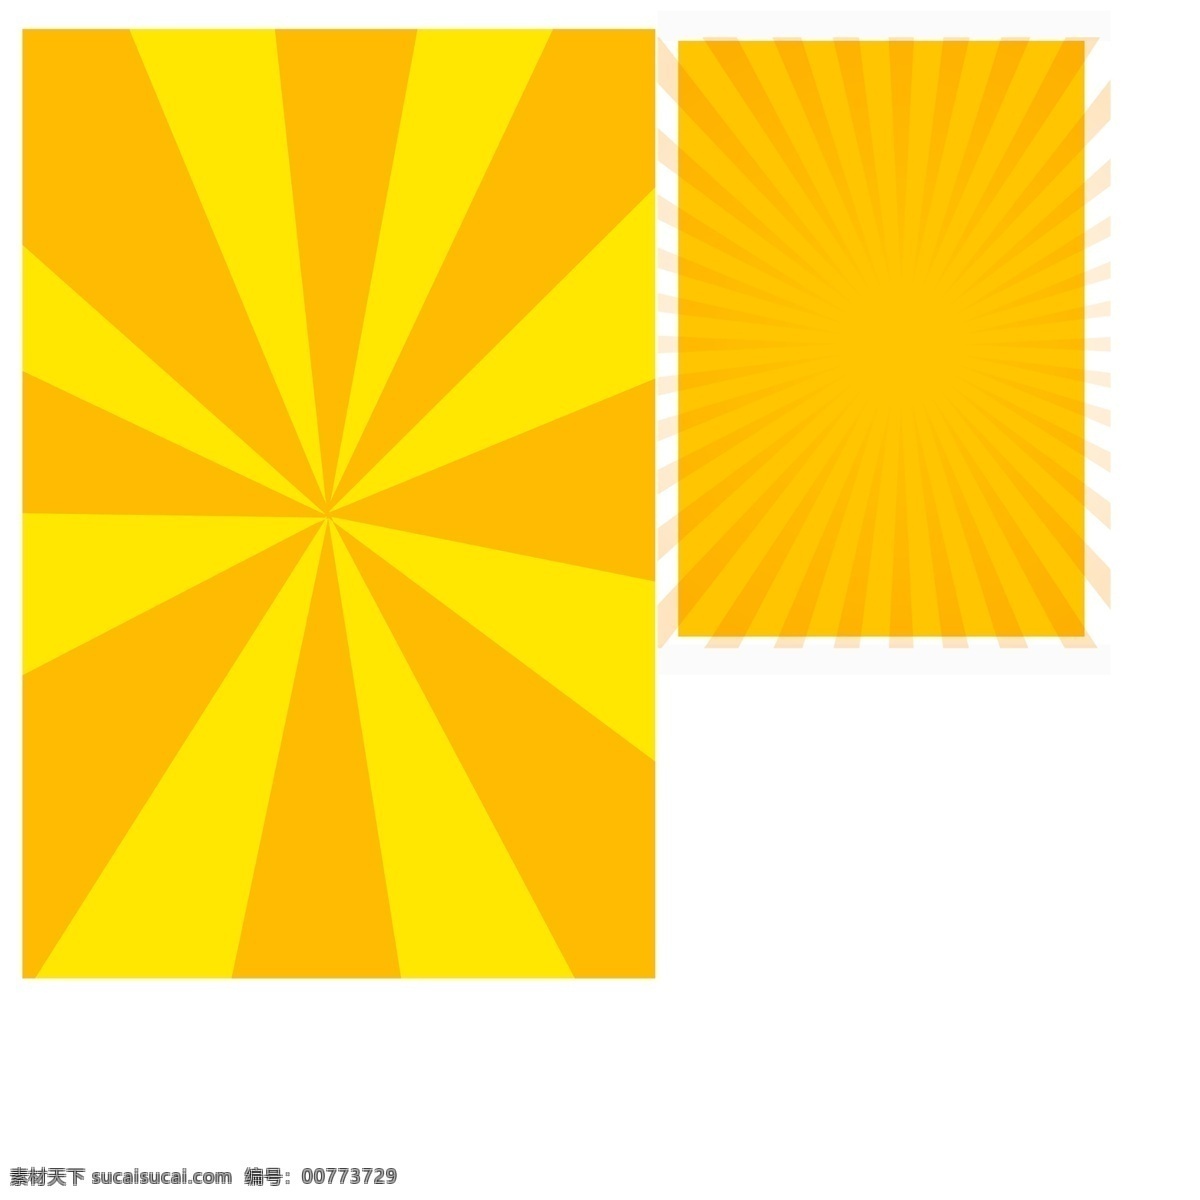 发散线条背景 色彩 彩条 发散 光芒 抽象 线条 黄色背景 发散光线 发散线条 背景 元素素材 黄色 金黄色 分层